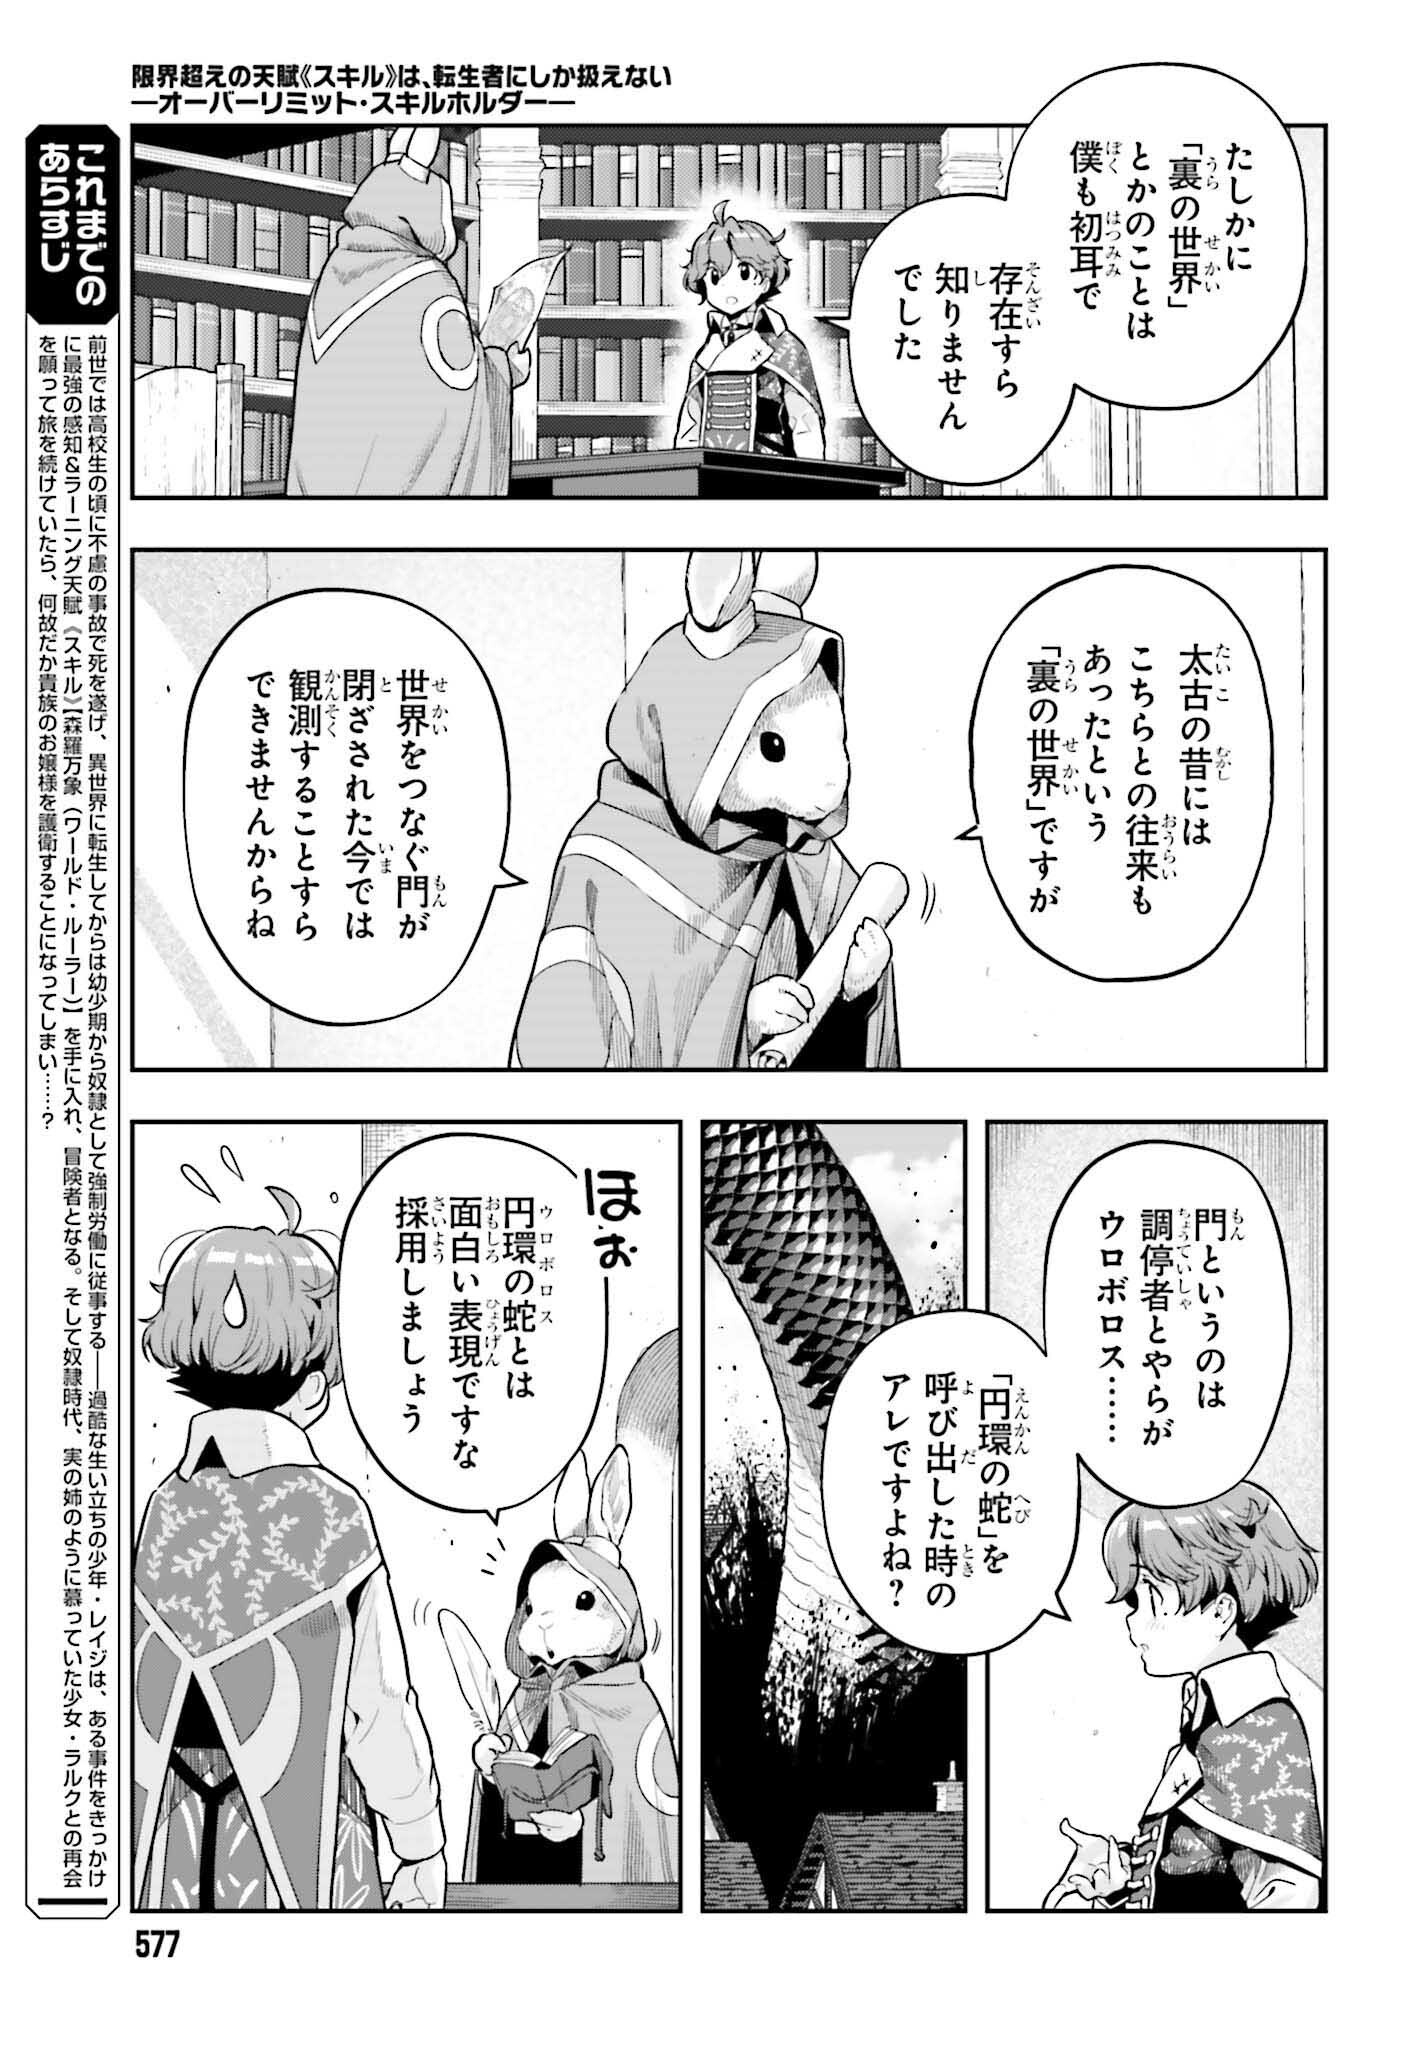 Genkai Koe no Tenpu wa, Tenseisha ni Shika Atsukaenai - Chapter 34 - Page 3